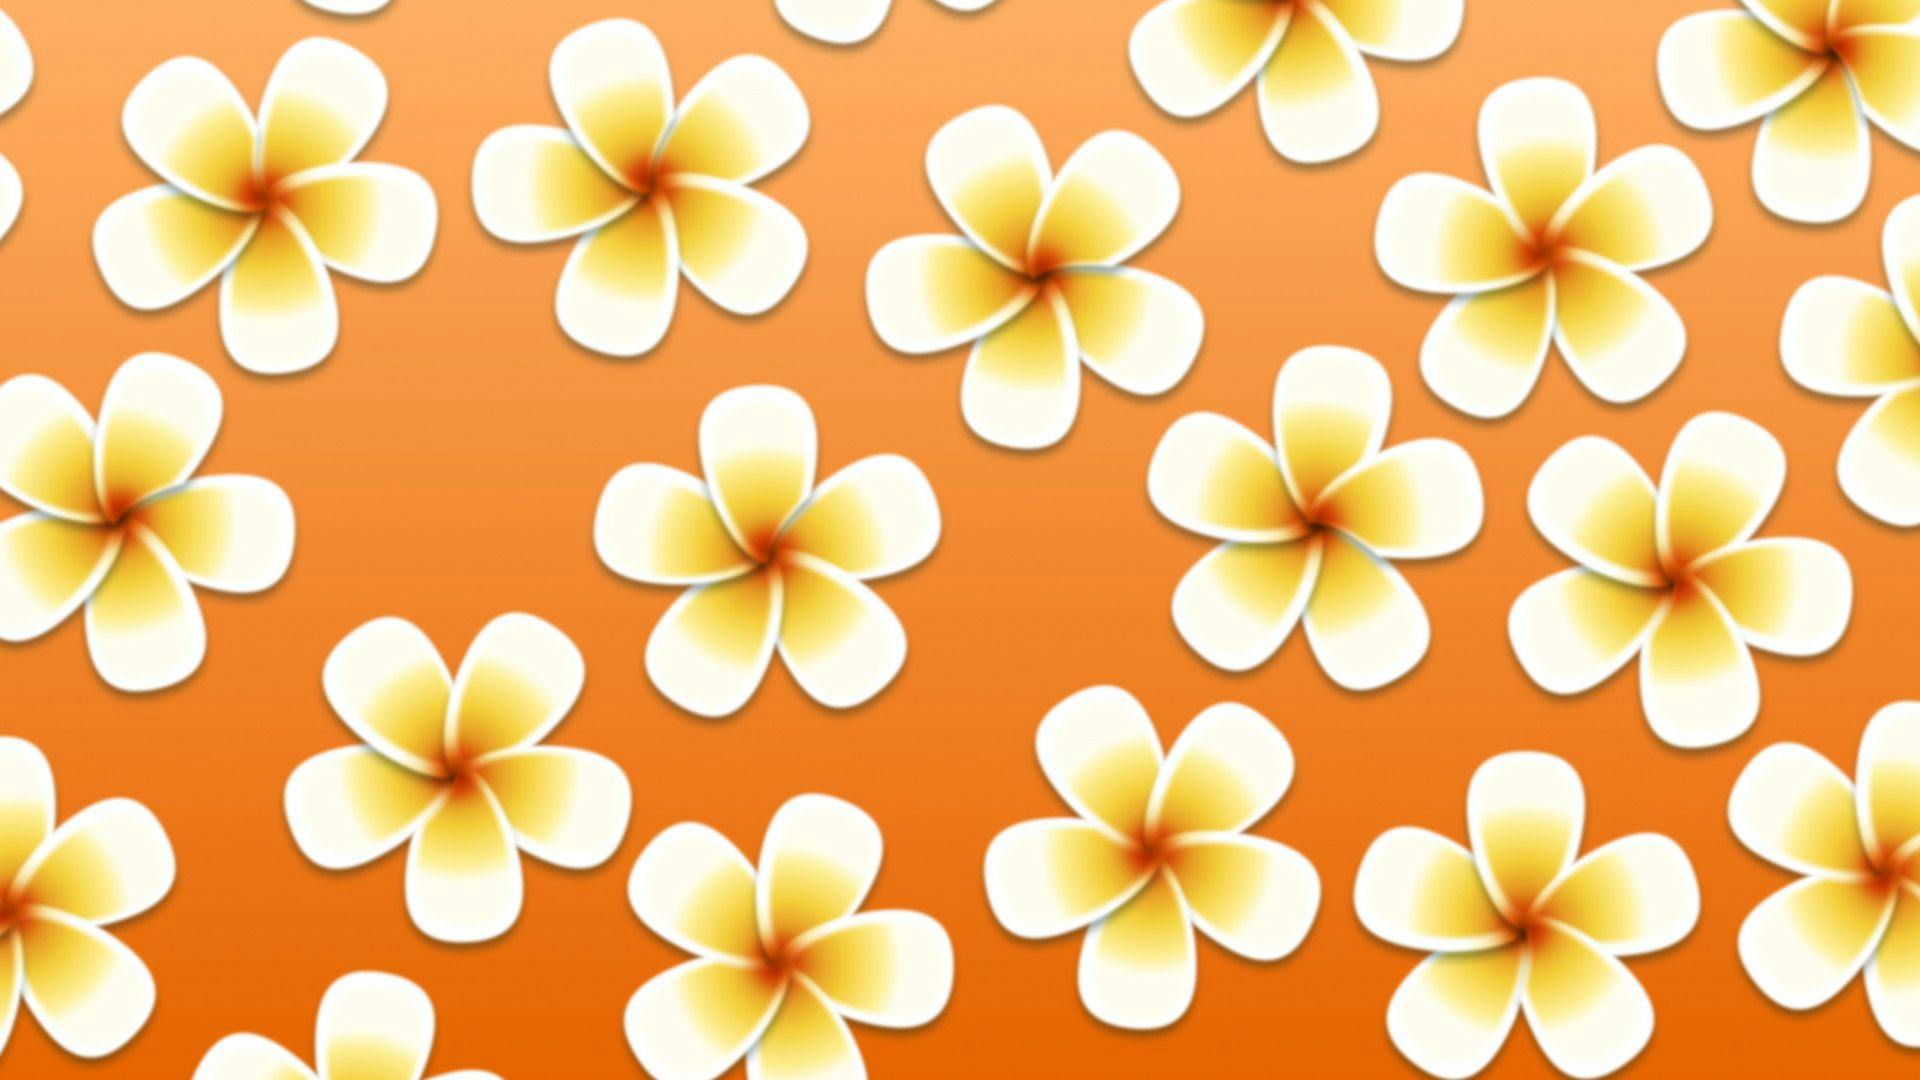 オレンジを背景とした白と黄色のプルメリアの花のイラスト